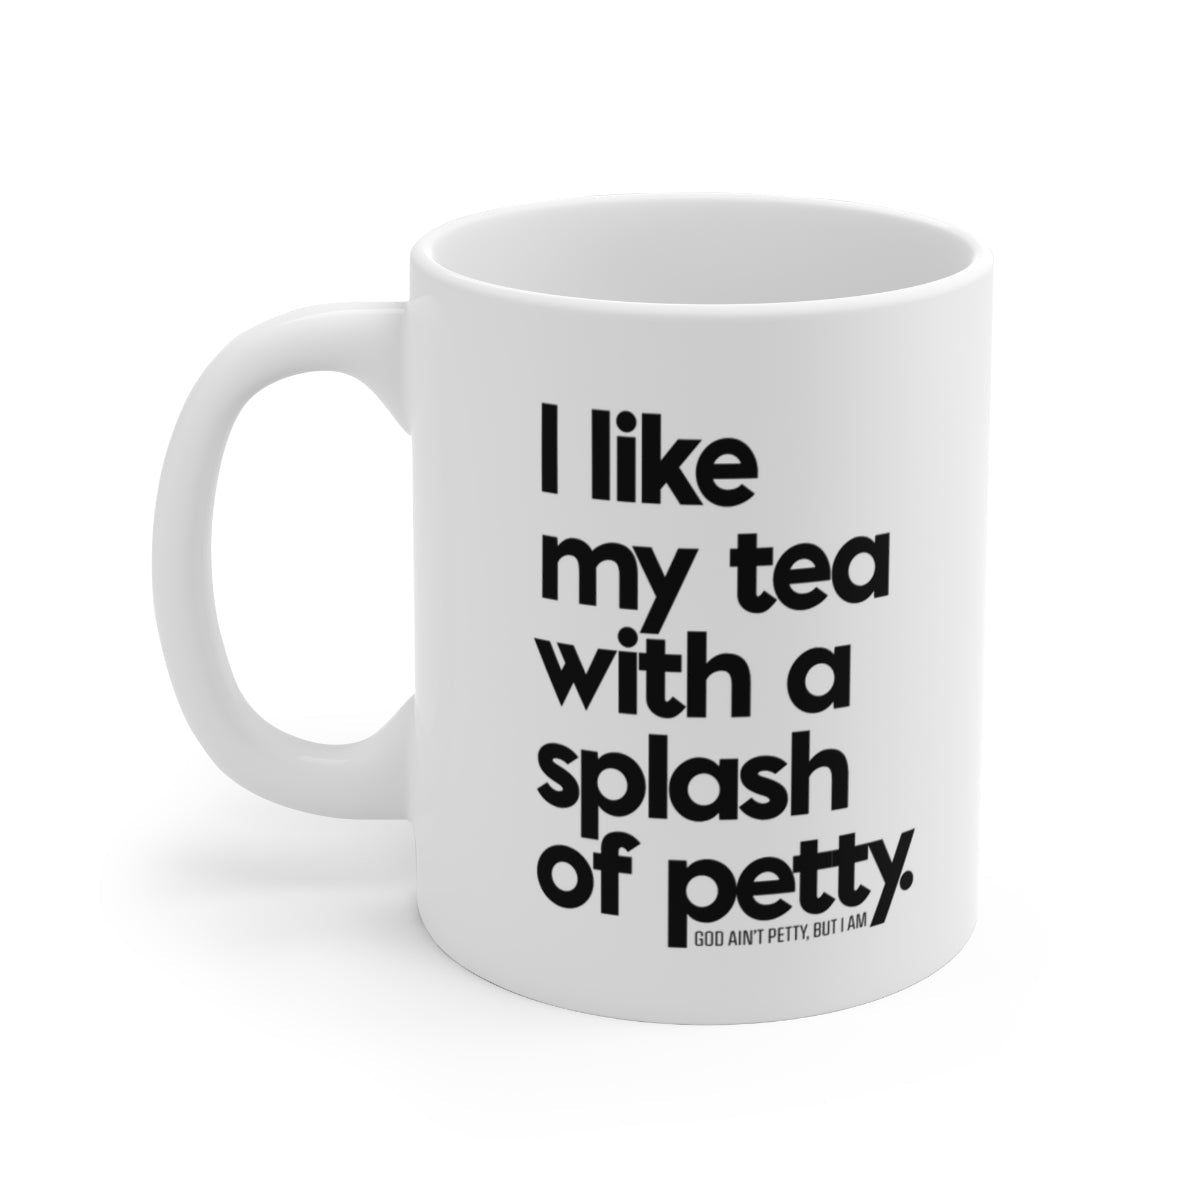 I Like my Tea with a Splash of Petty Mug 11oz (White/Black)-Mug-The Original God Ain't Petty But I Am